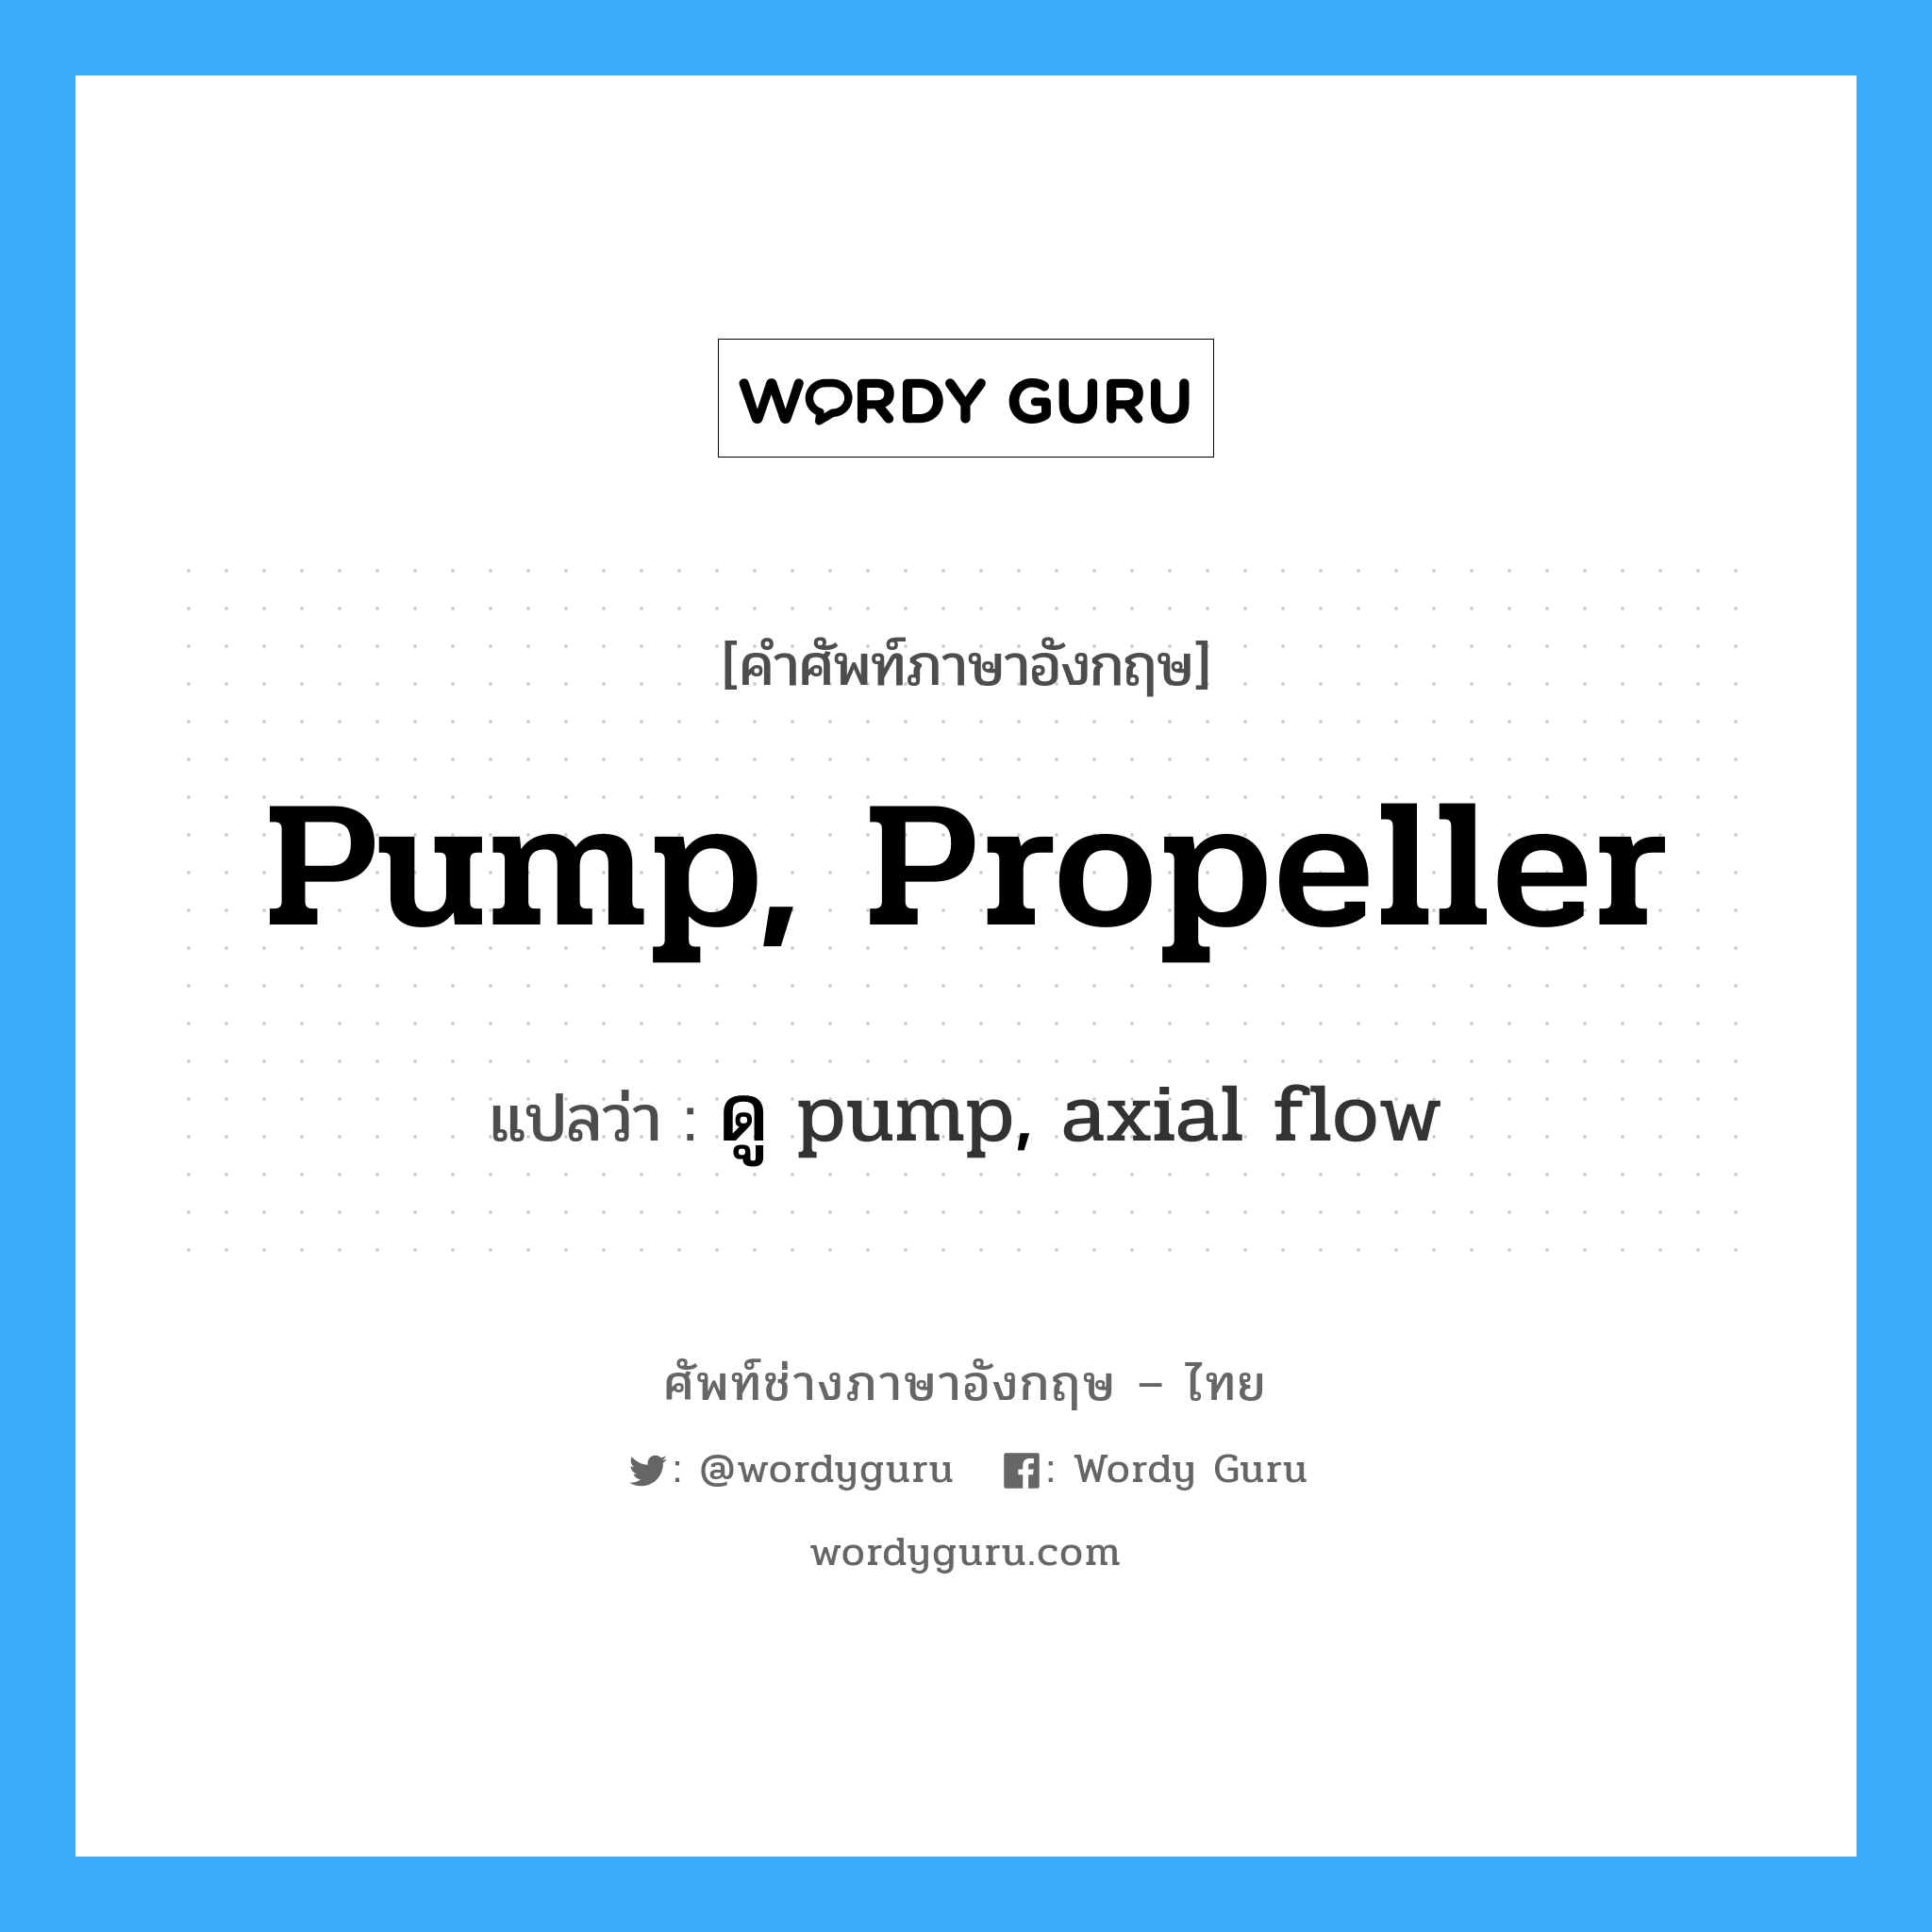 pump, propeller แปลว่า?, คำศัพท์ช่างภาษาอังกฤษ - ไทย pump, propeller คำศัพท์ภาษาอังกฤษ pump, propeller แปลว่า ดู pump, axial flow